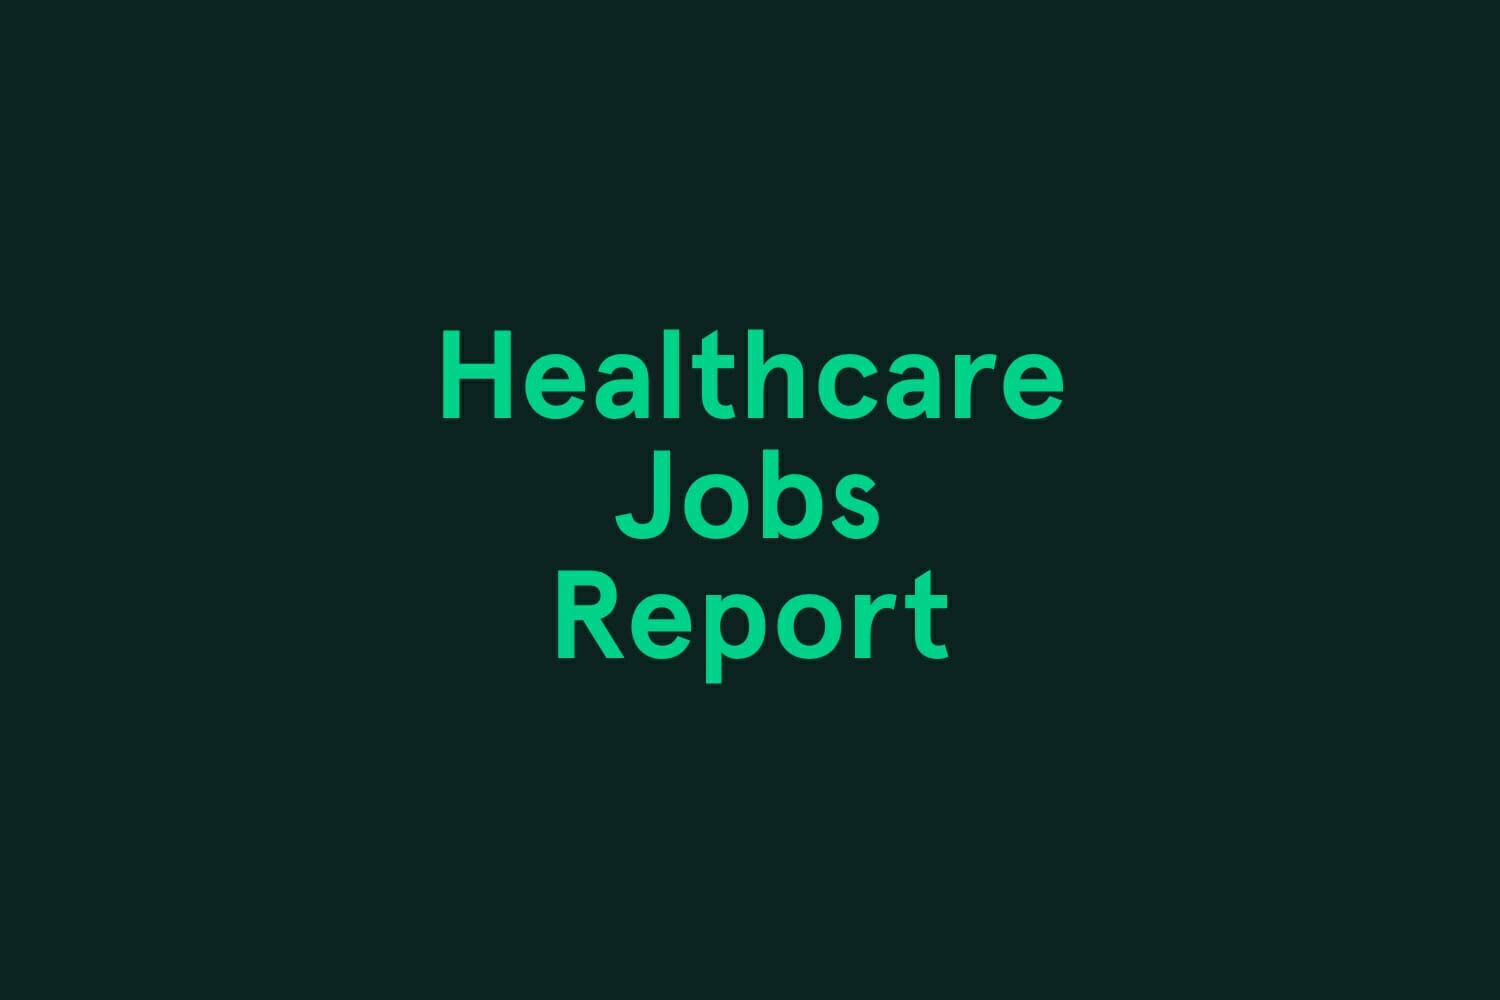 October Healthcare Jobs Report Infographic